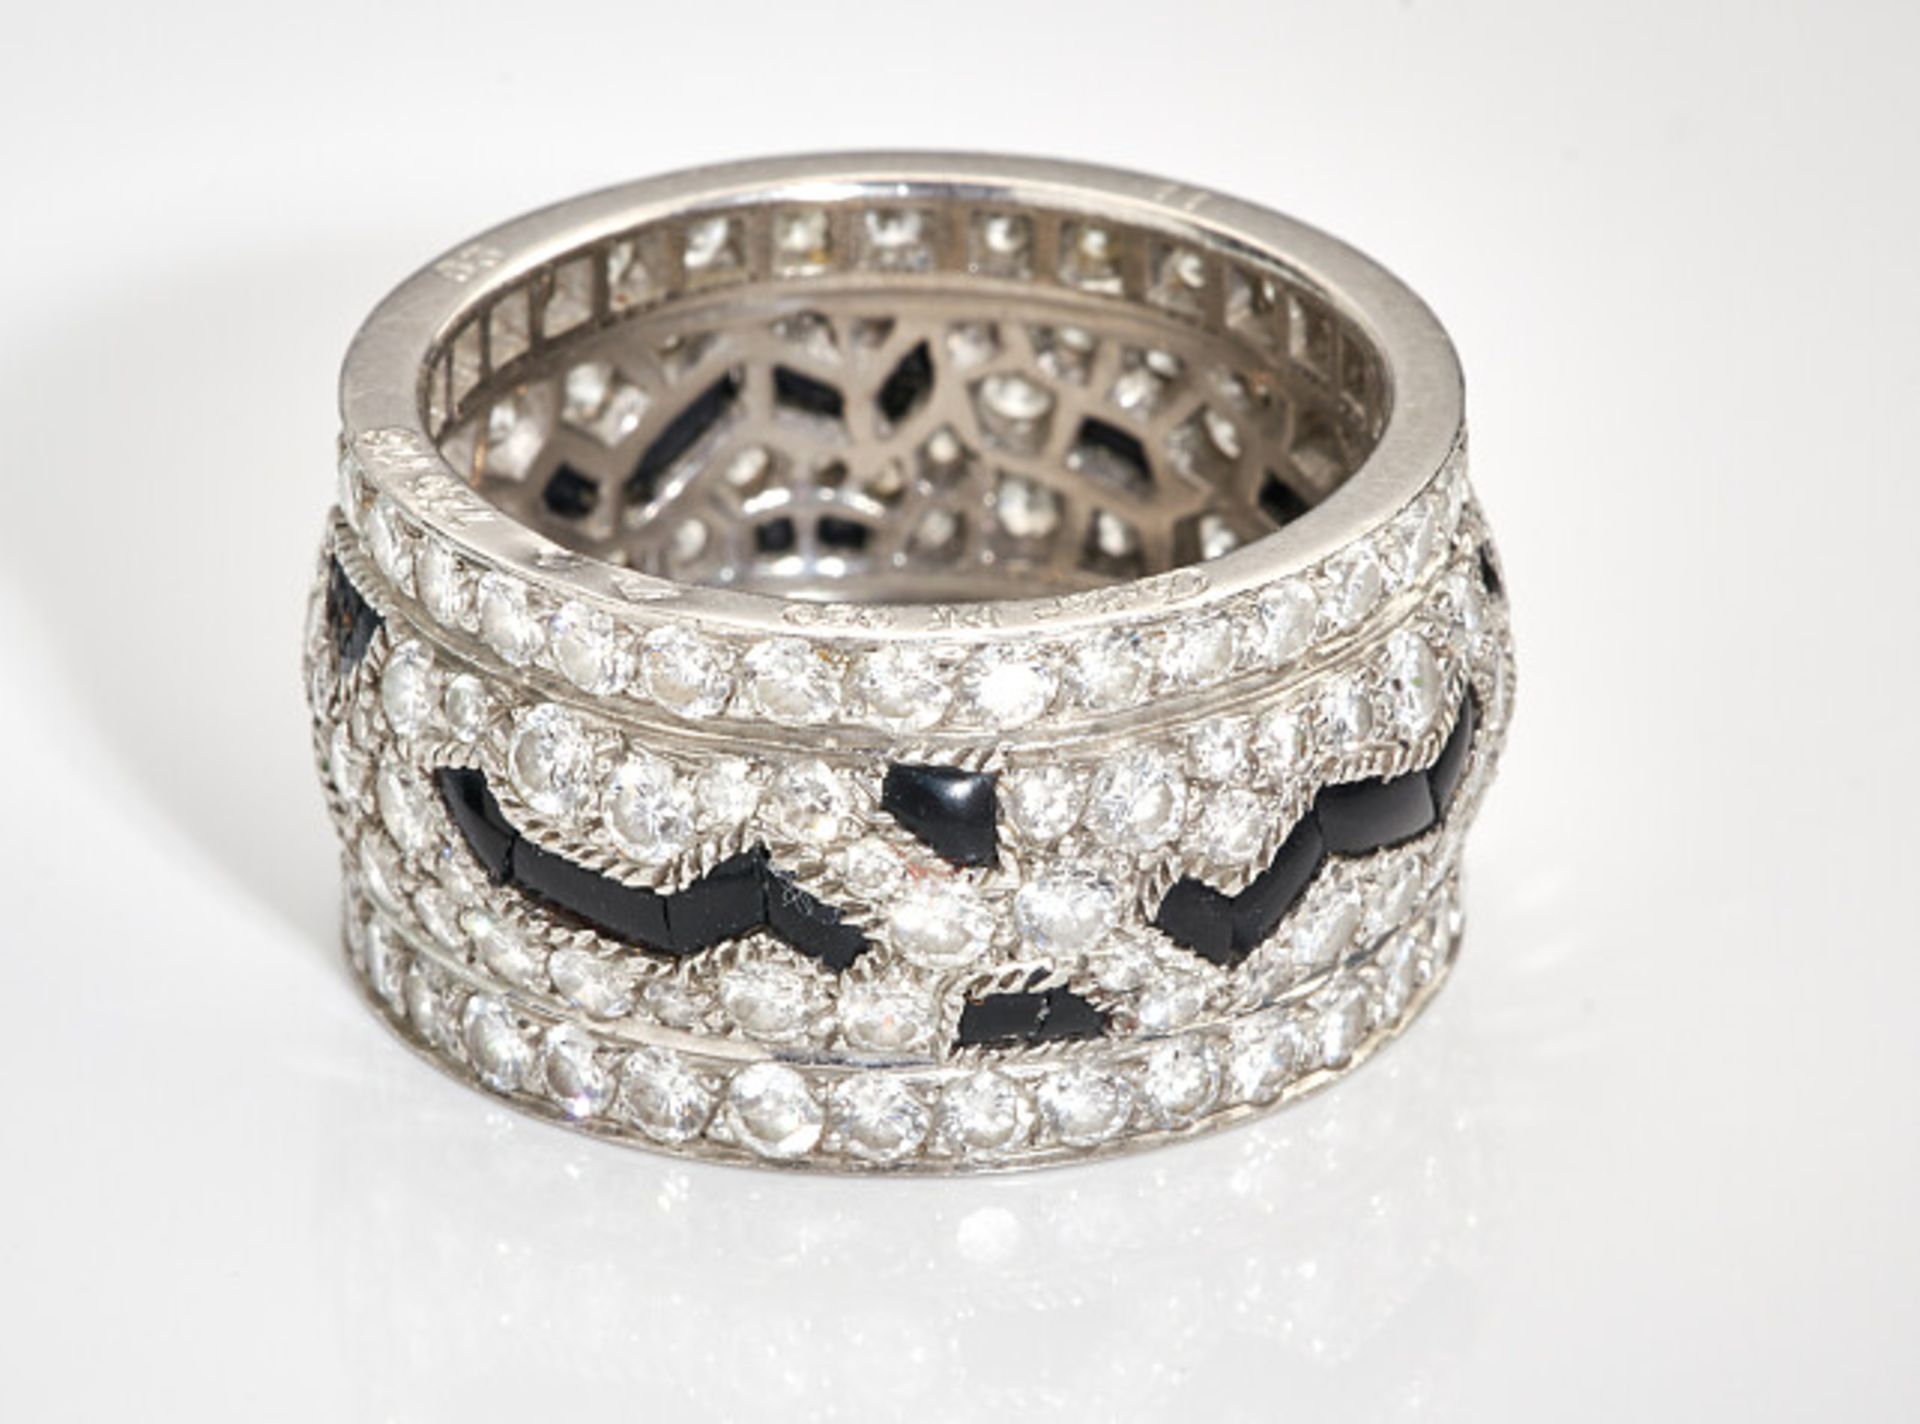 Deutsches Reich 1933 - 1945 - Schmuck und Juwelen : Diamant - Onyx Ring by Cartier. - Bild 9 aus 15